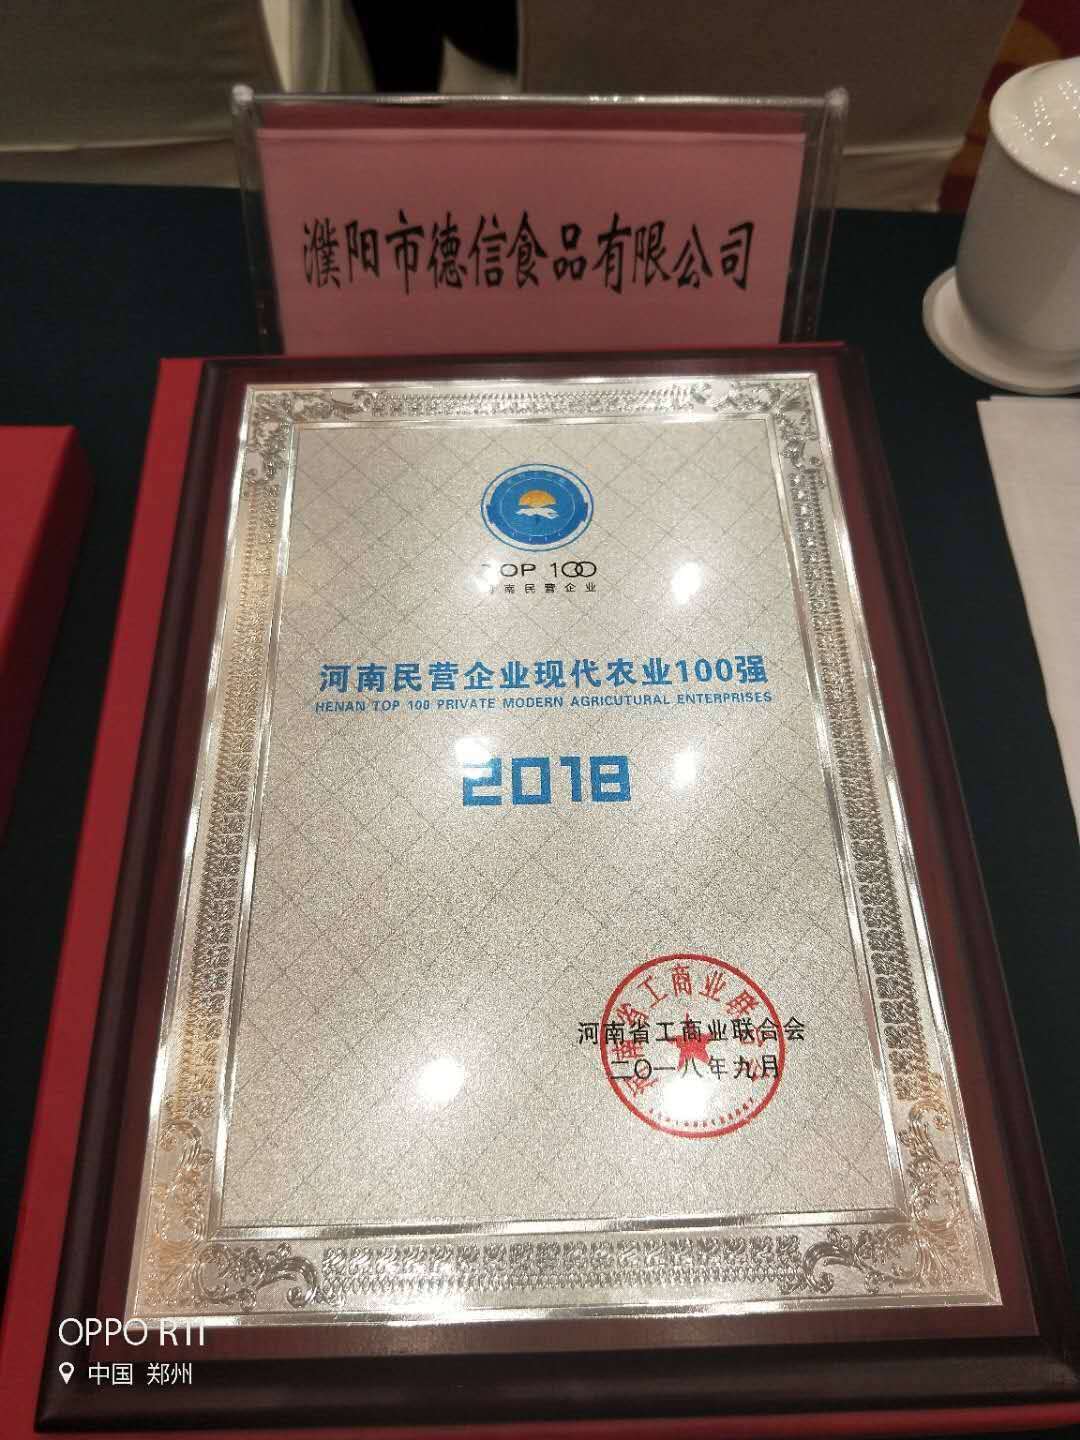 2018年被授予河南民营企业现代企业100强